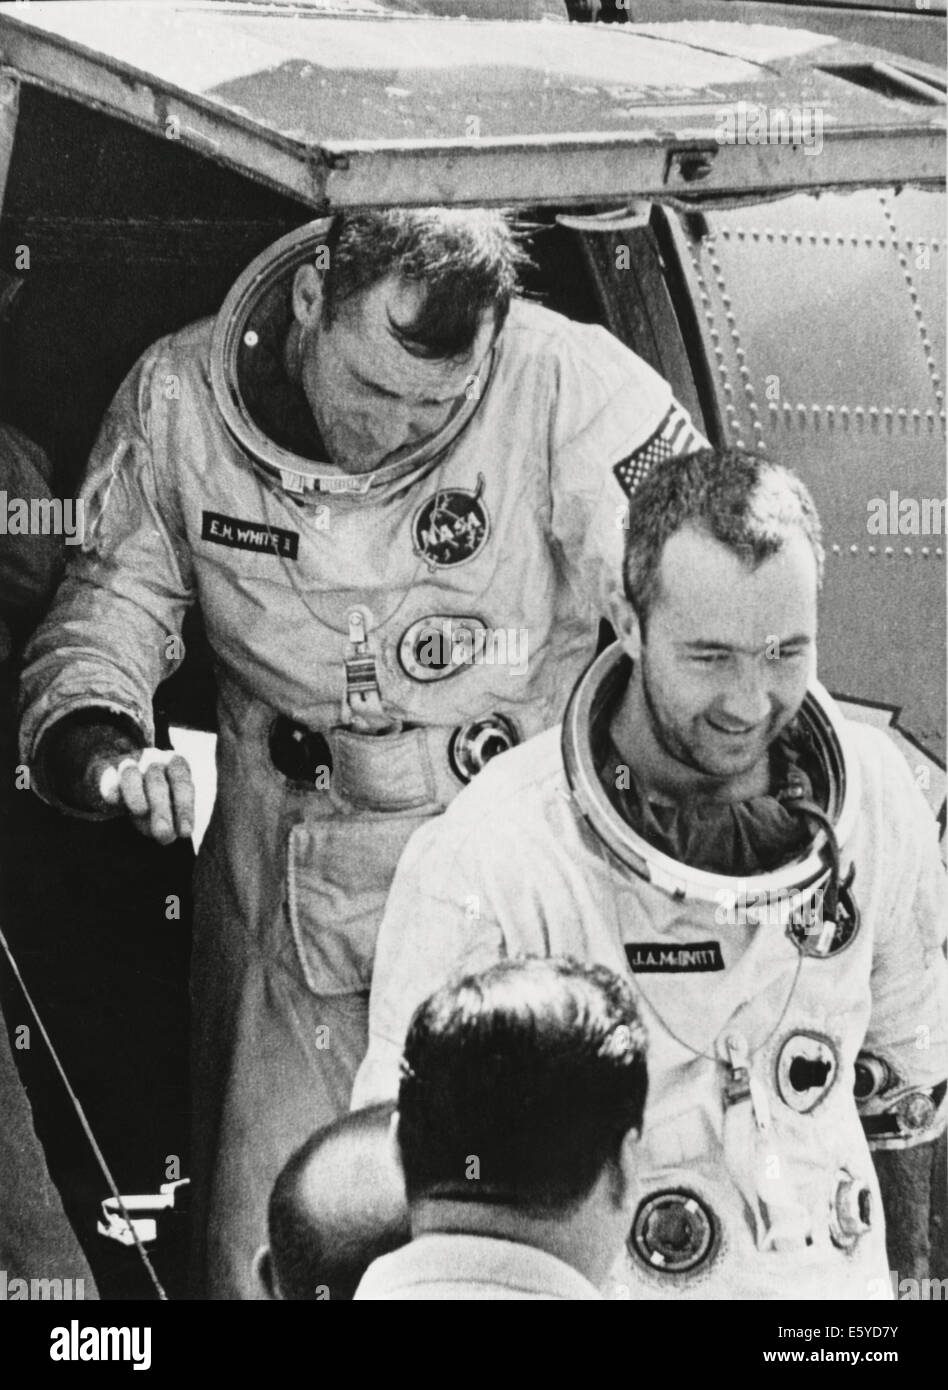 Les astronautes de la NASA James McDivitt (avant) et Edward White II après l'achèvement de la Mission spatiale Gemini IV, le 7 juin 1965 Banque D'Images